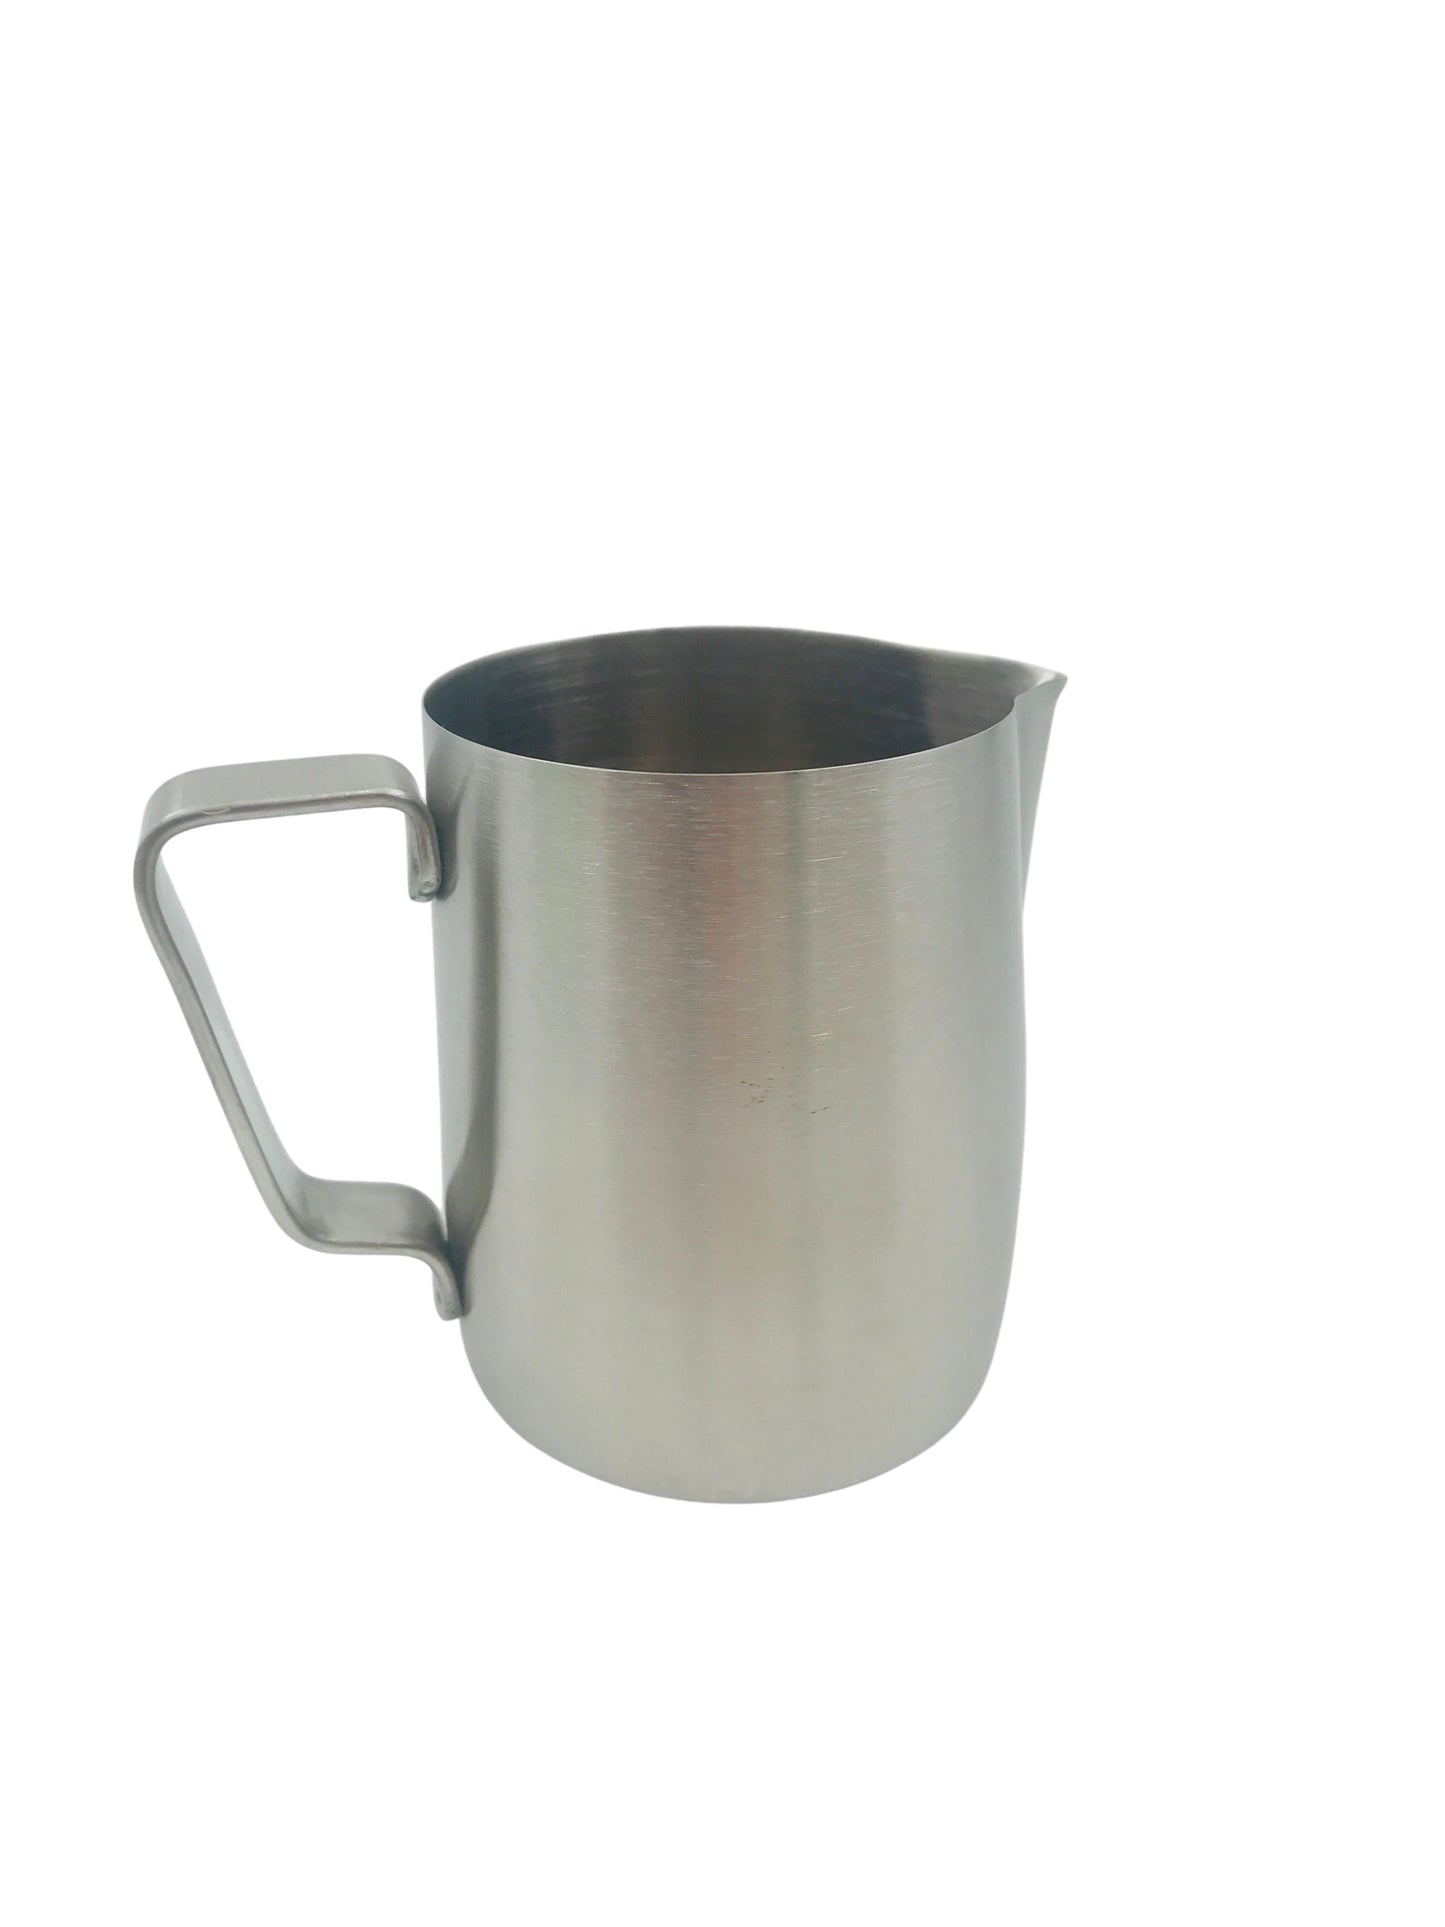 Milk Jug - Coffee Accessories 300ml Stainless Steel Jug